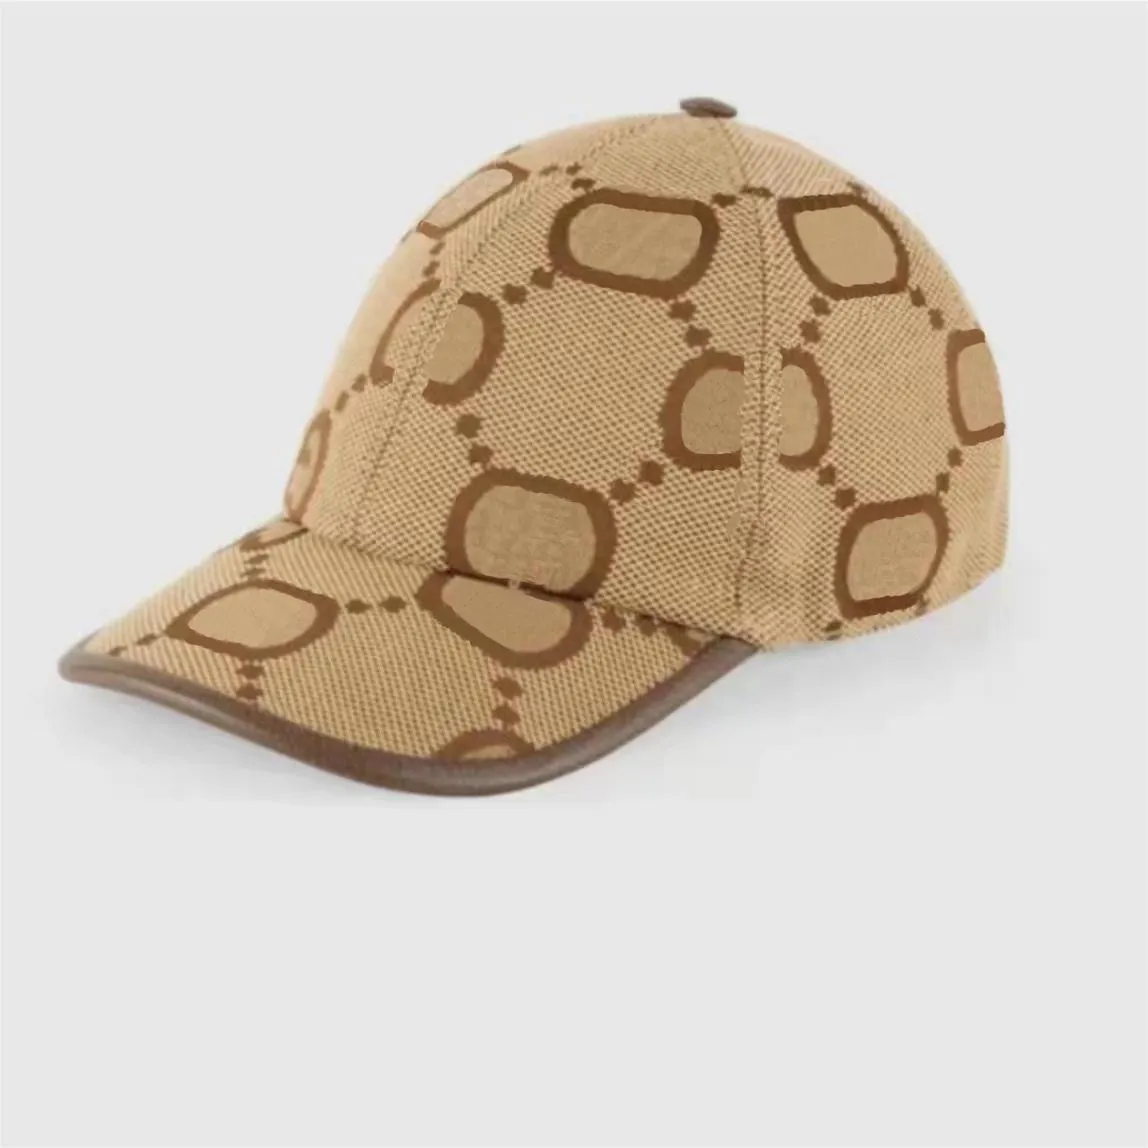 Lüks Marka Kova Şapka Moda Tasarımcısı Şapkalar Bayan Parti Hediye Erkek Moda Kapaklar G Kap Bere Kap Kış Casquette D22101304JX